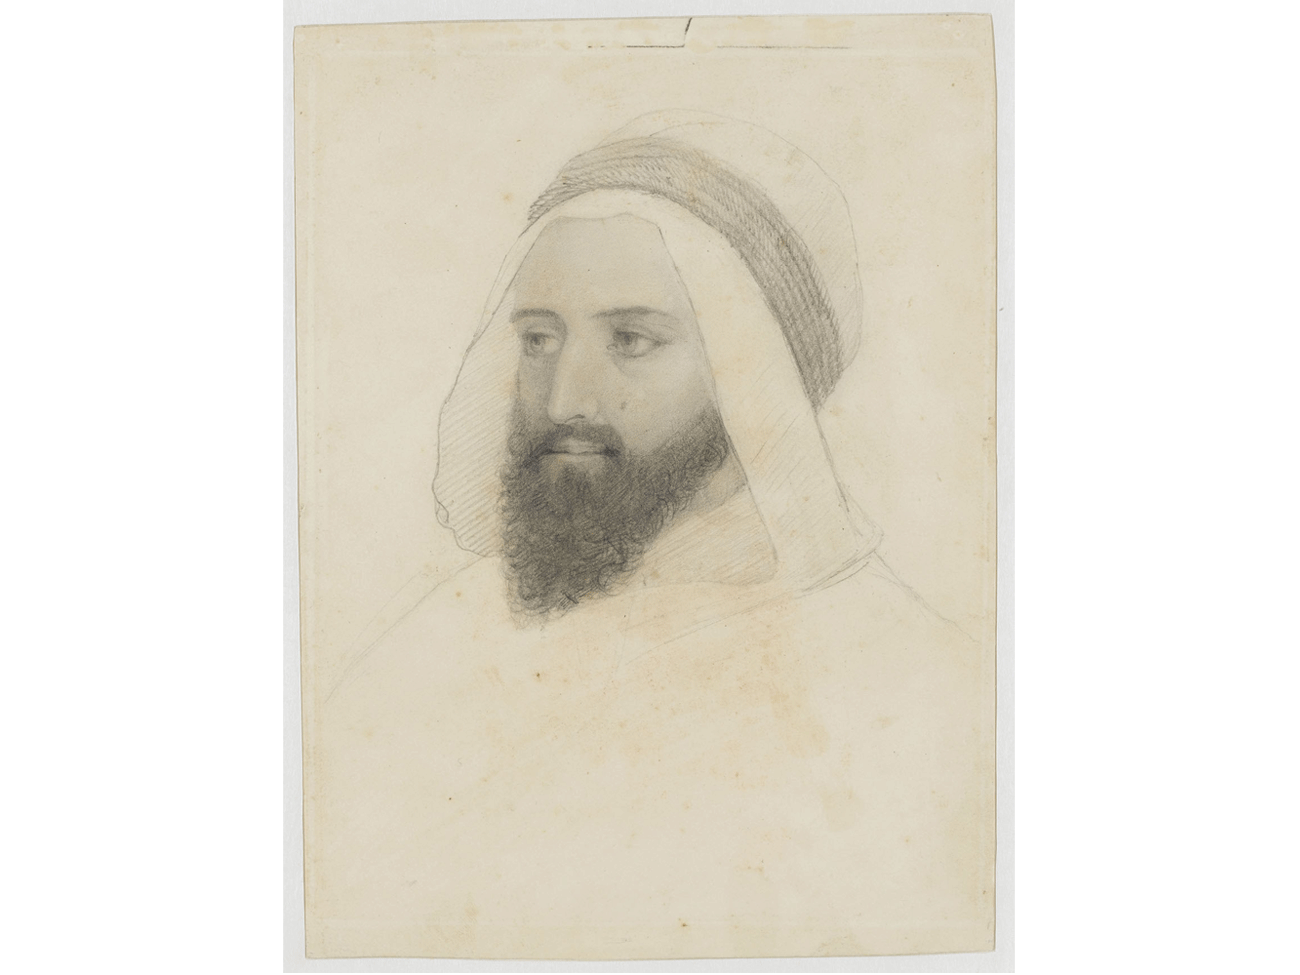  Charles Eynard, Portrait d’Abd el-Kader, 1848, dessin. Musée national et domaine du château de Pau © RMN-Grand Palais (Château de Pau) / René-Gabriel Ojeda